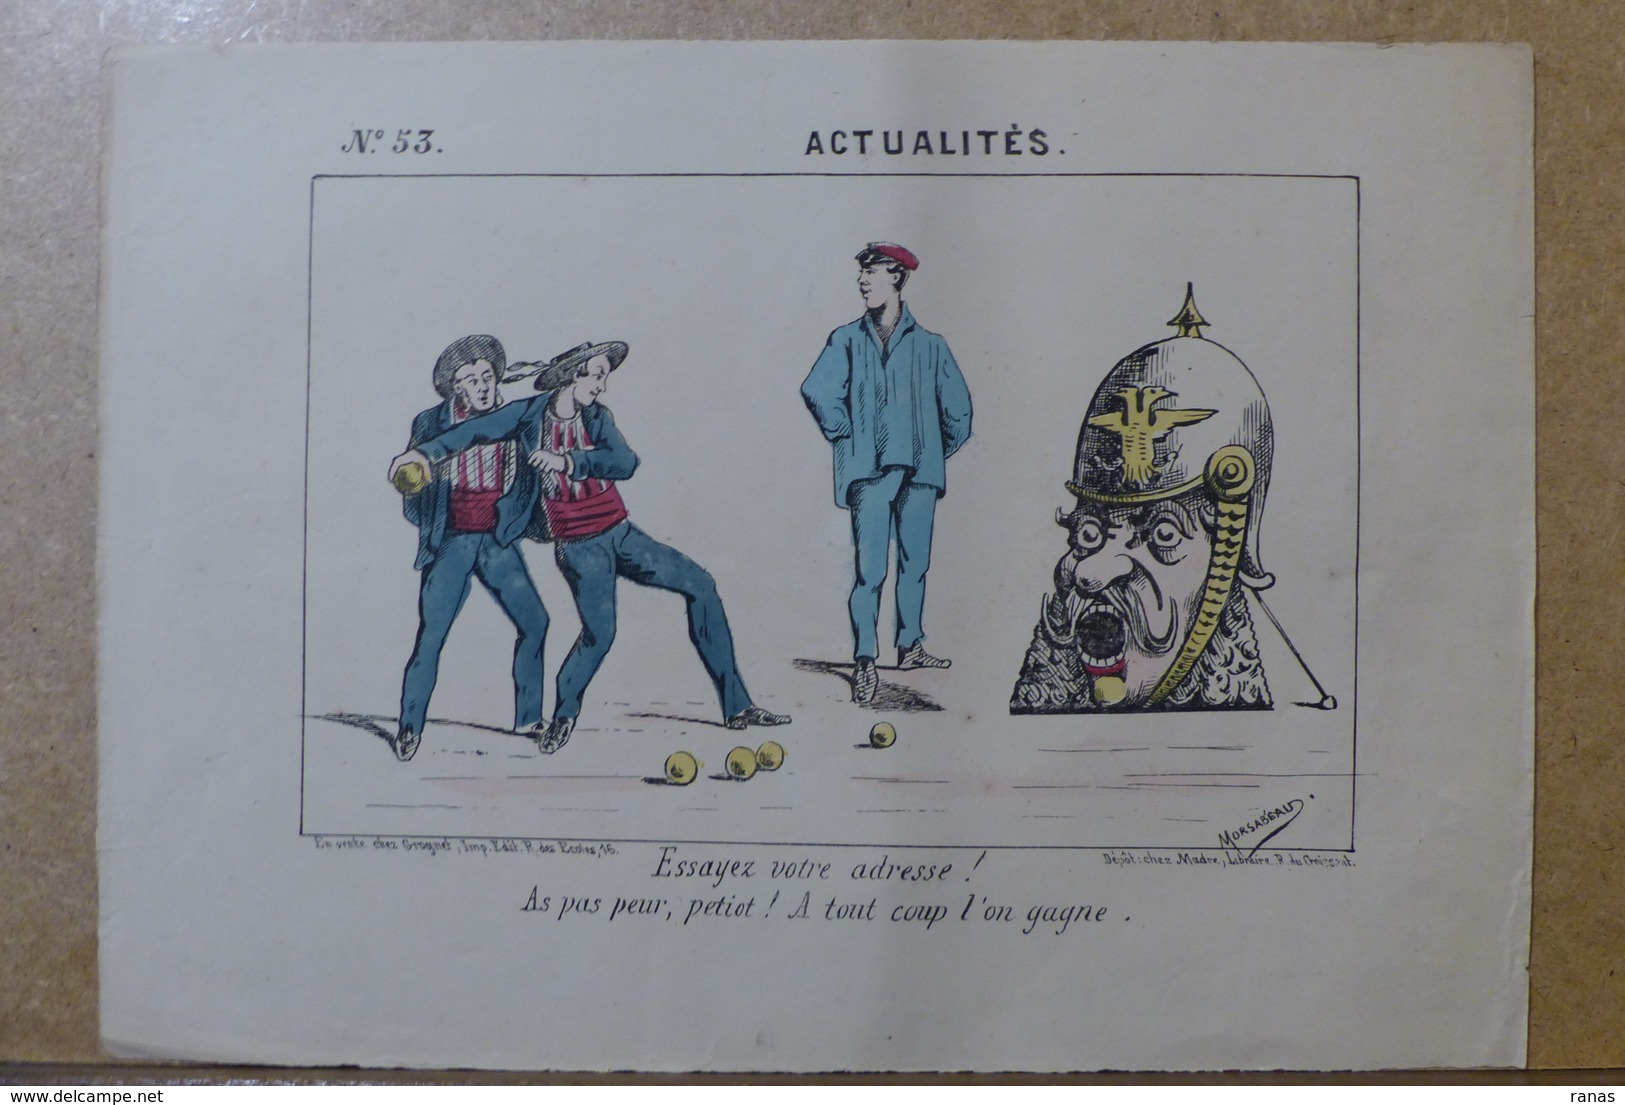 Estampe Gravure Satirique Caricature D'époque 1870 Bismarck Jeu De La Grenouille - Prints & Engravings